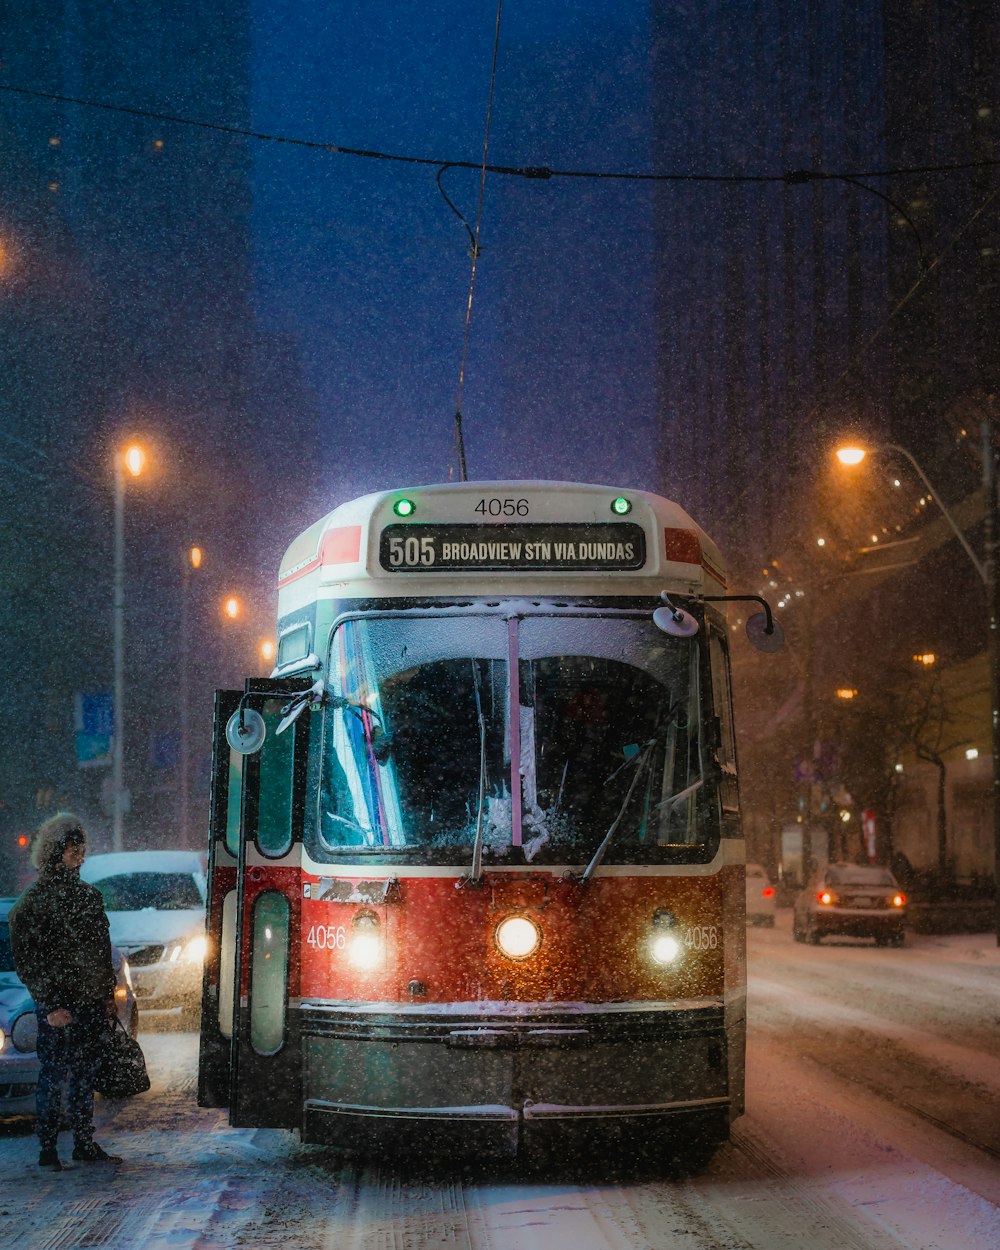 夜間の道路を走る赤と白のバス